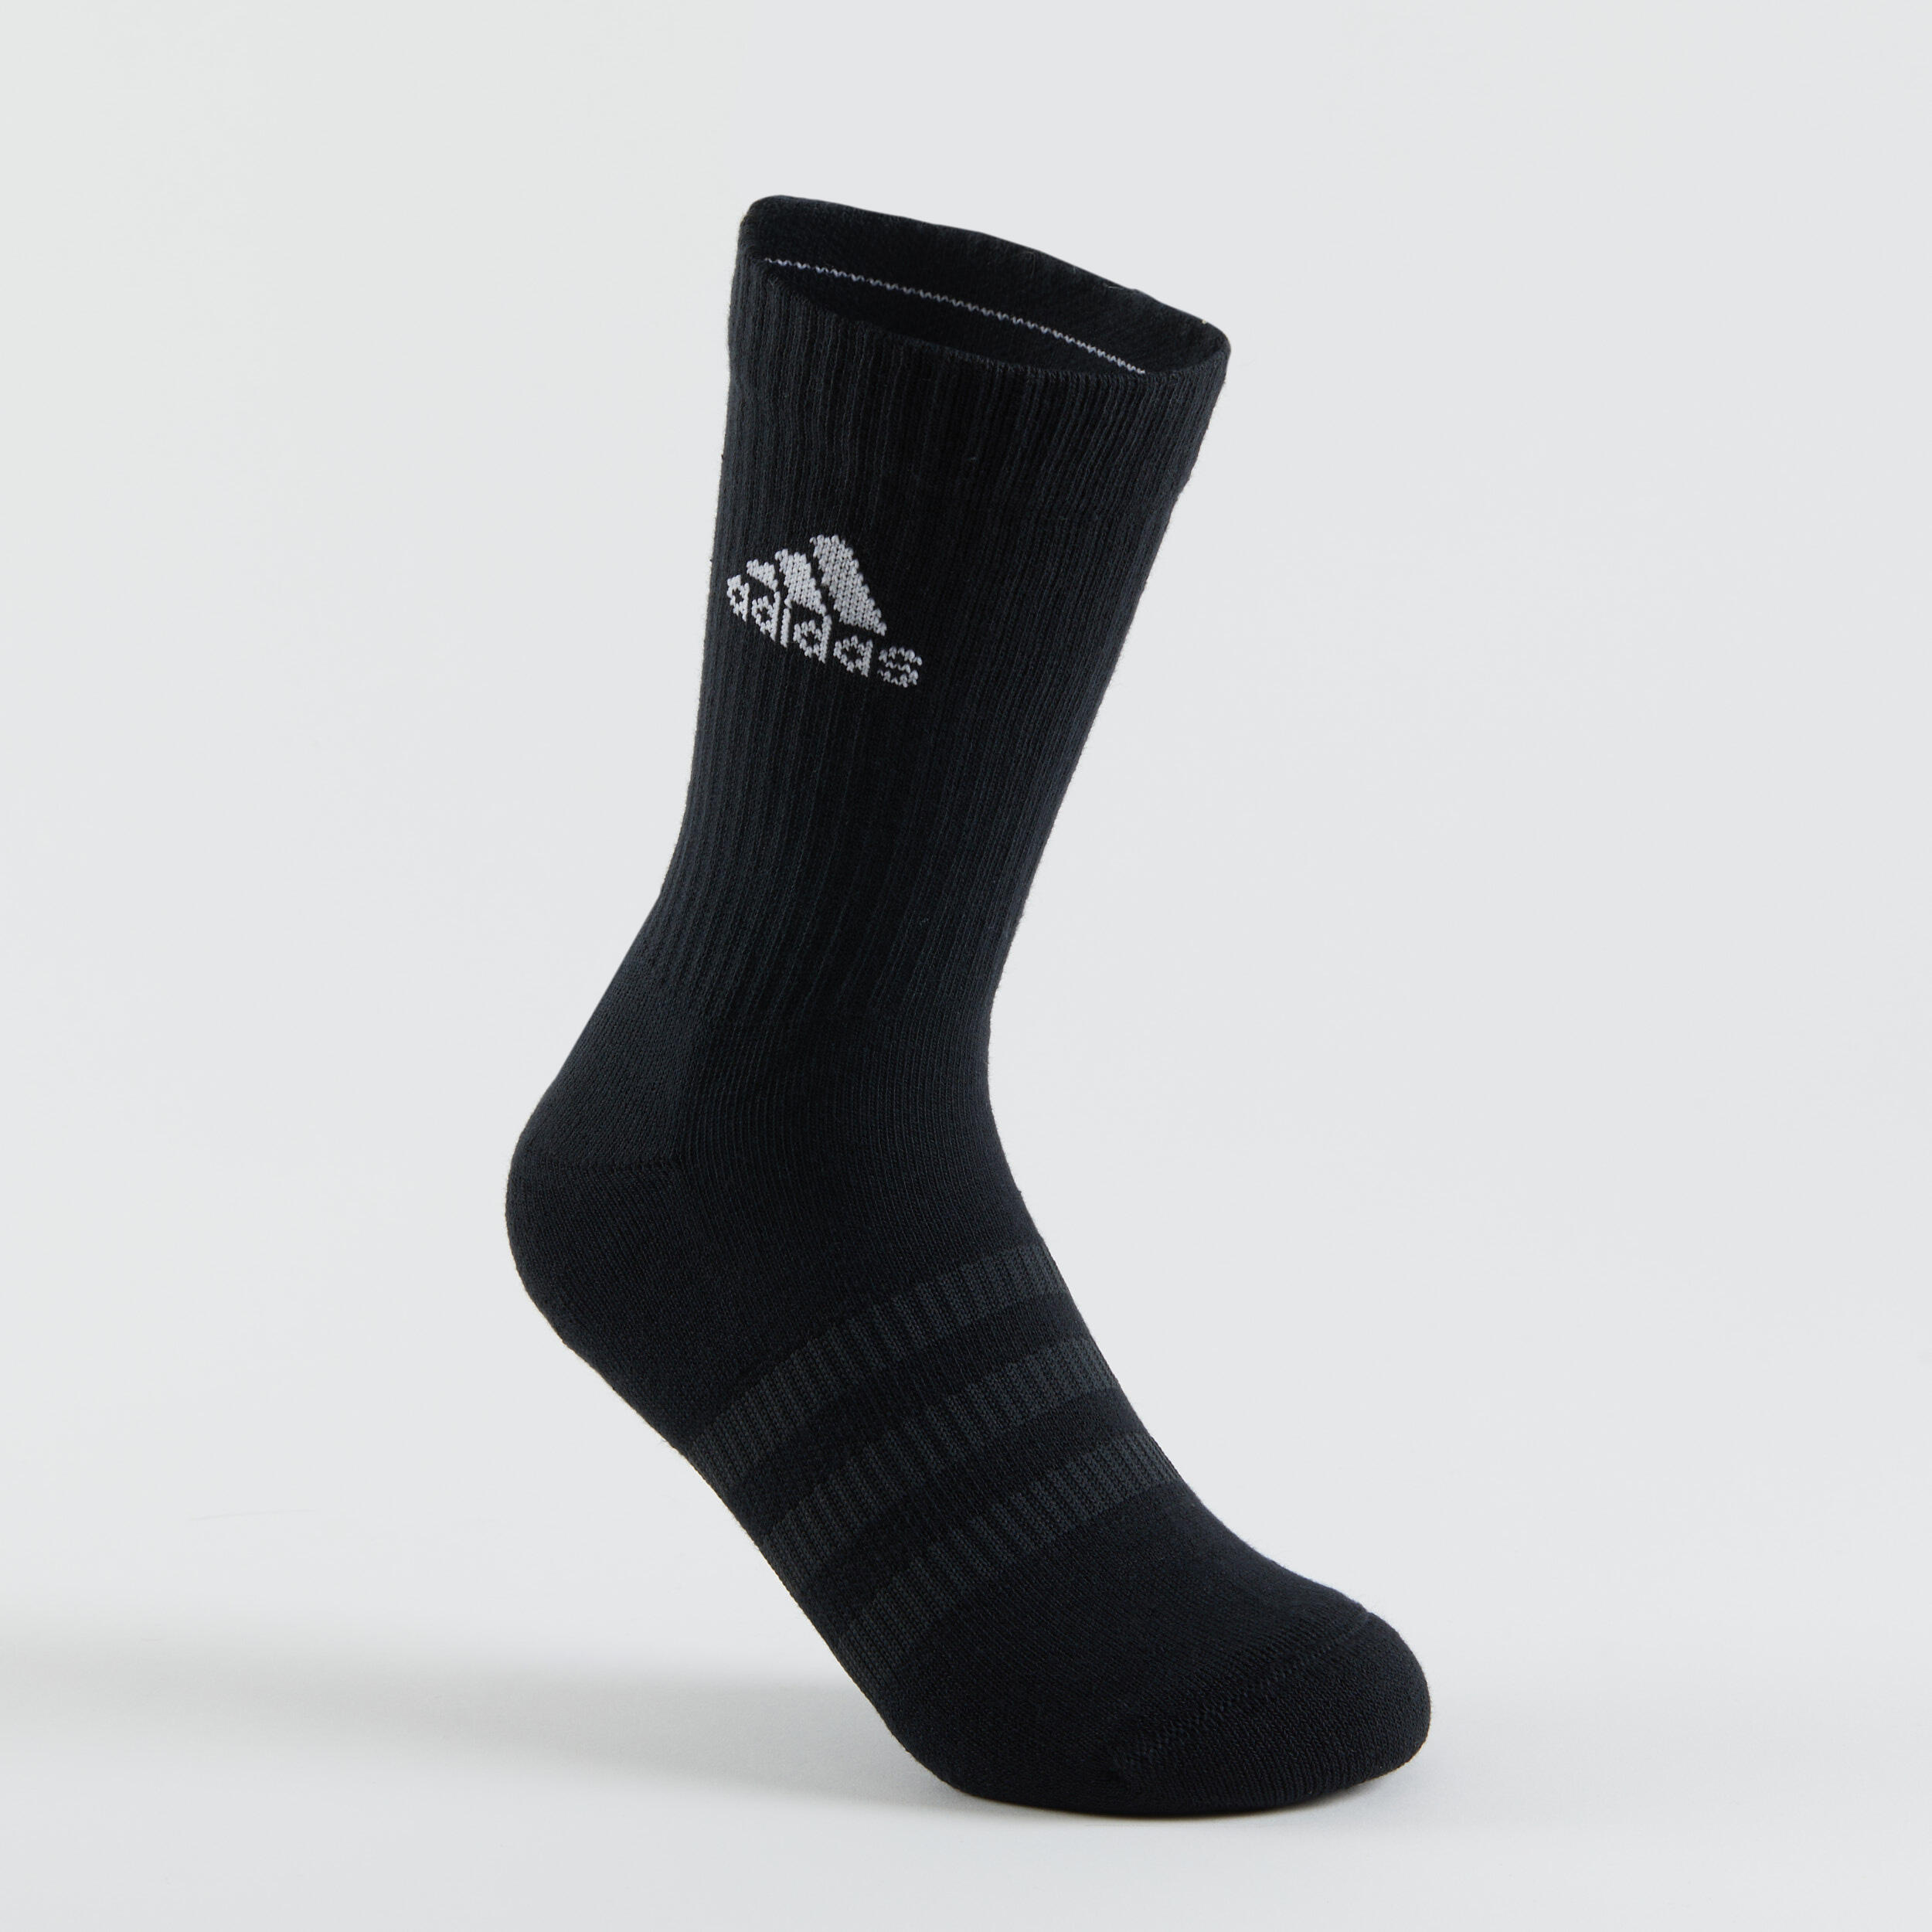 High Sports Socks Tri-Pack - Grey/White/Black 4/14